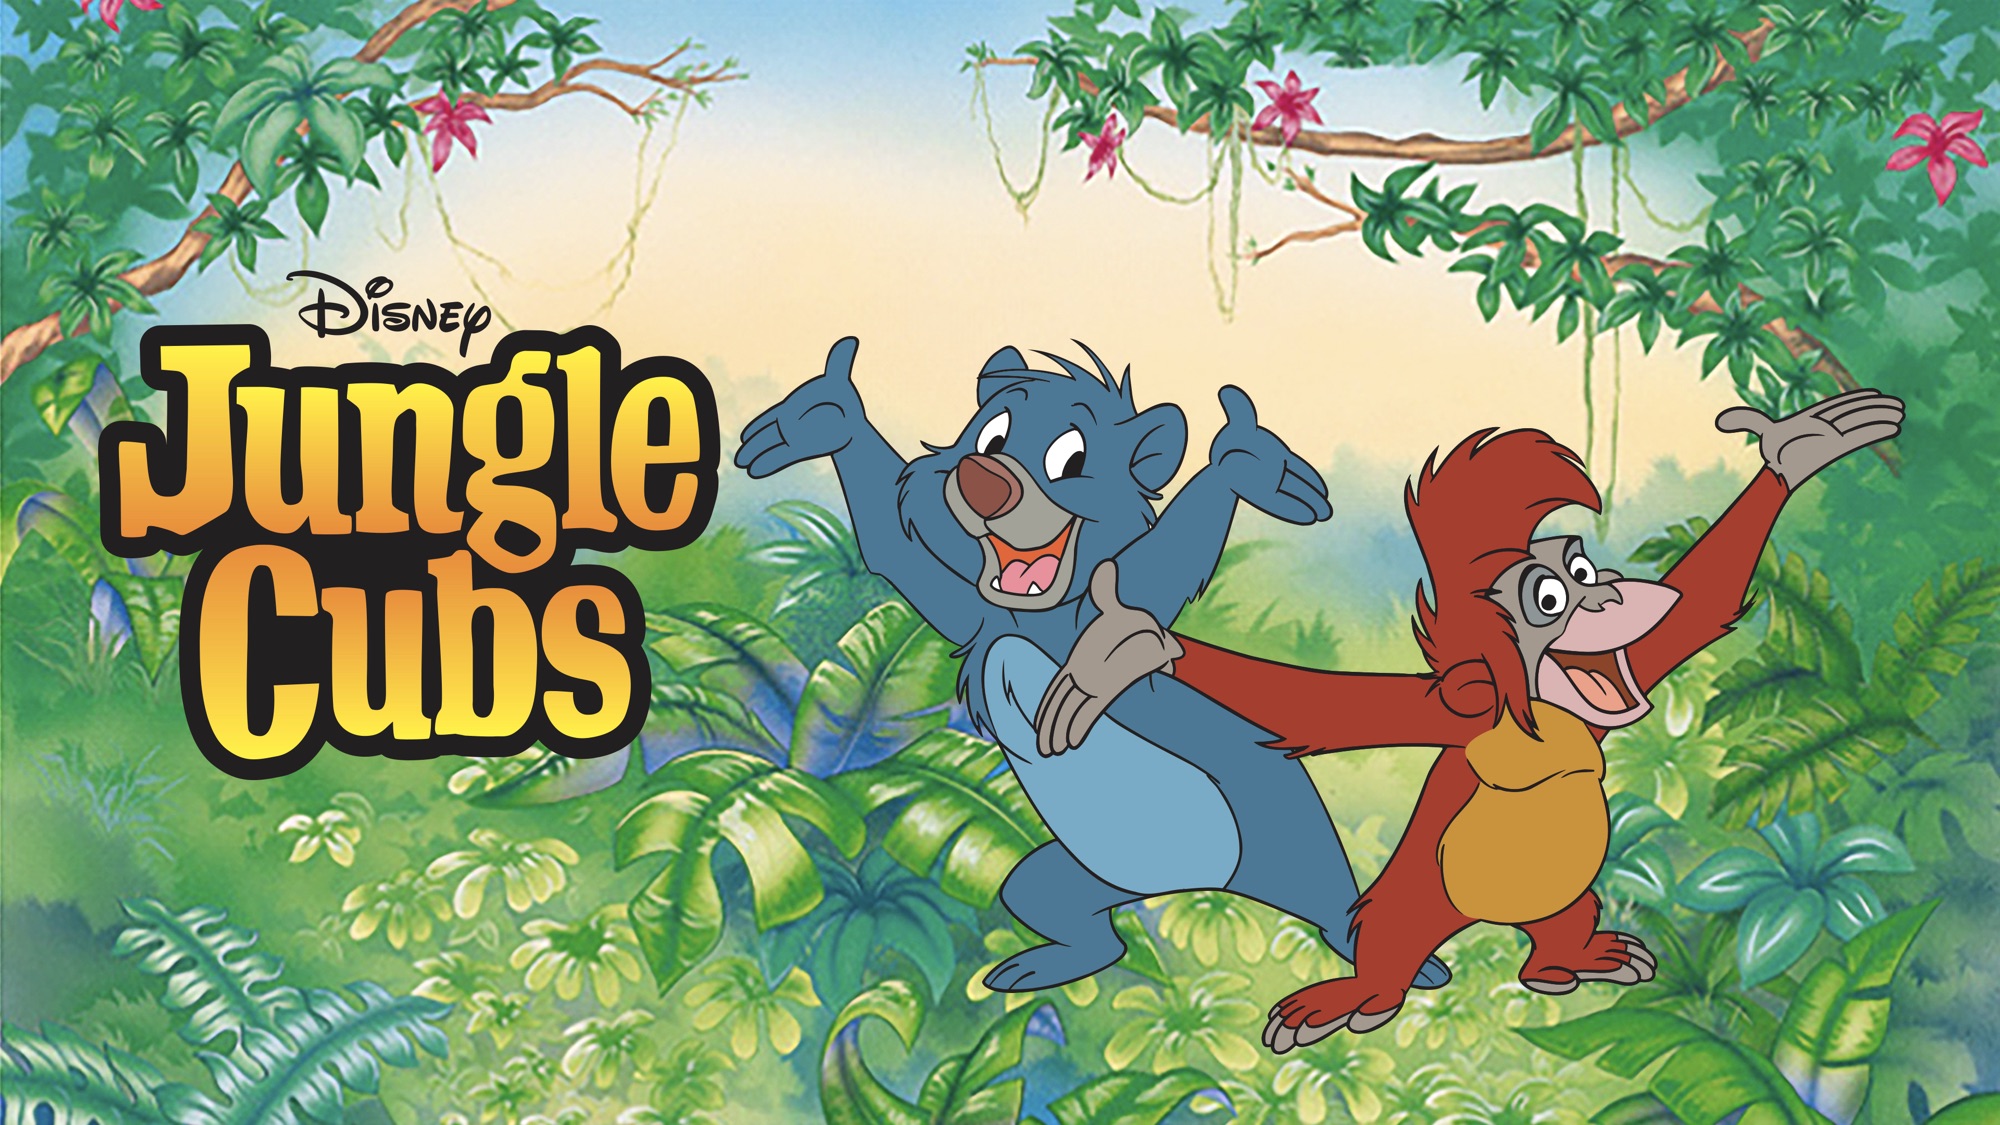 Jungle cubs credits